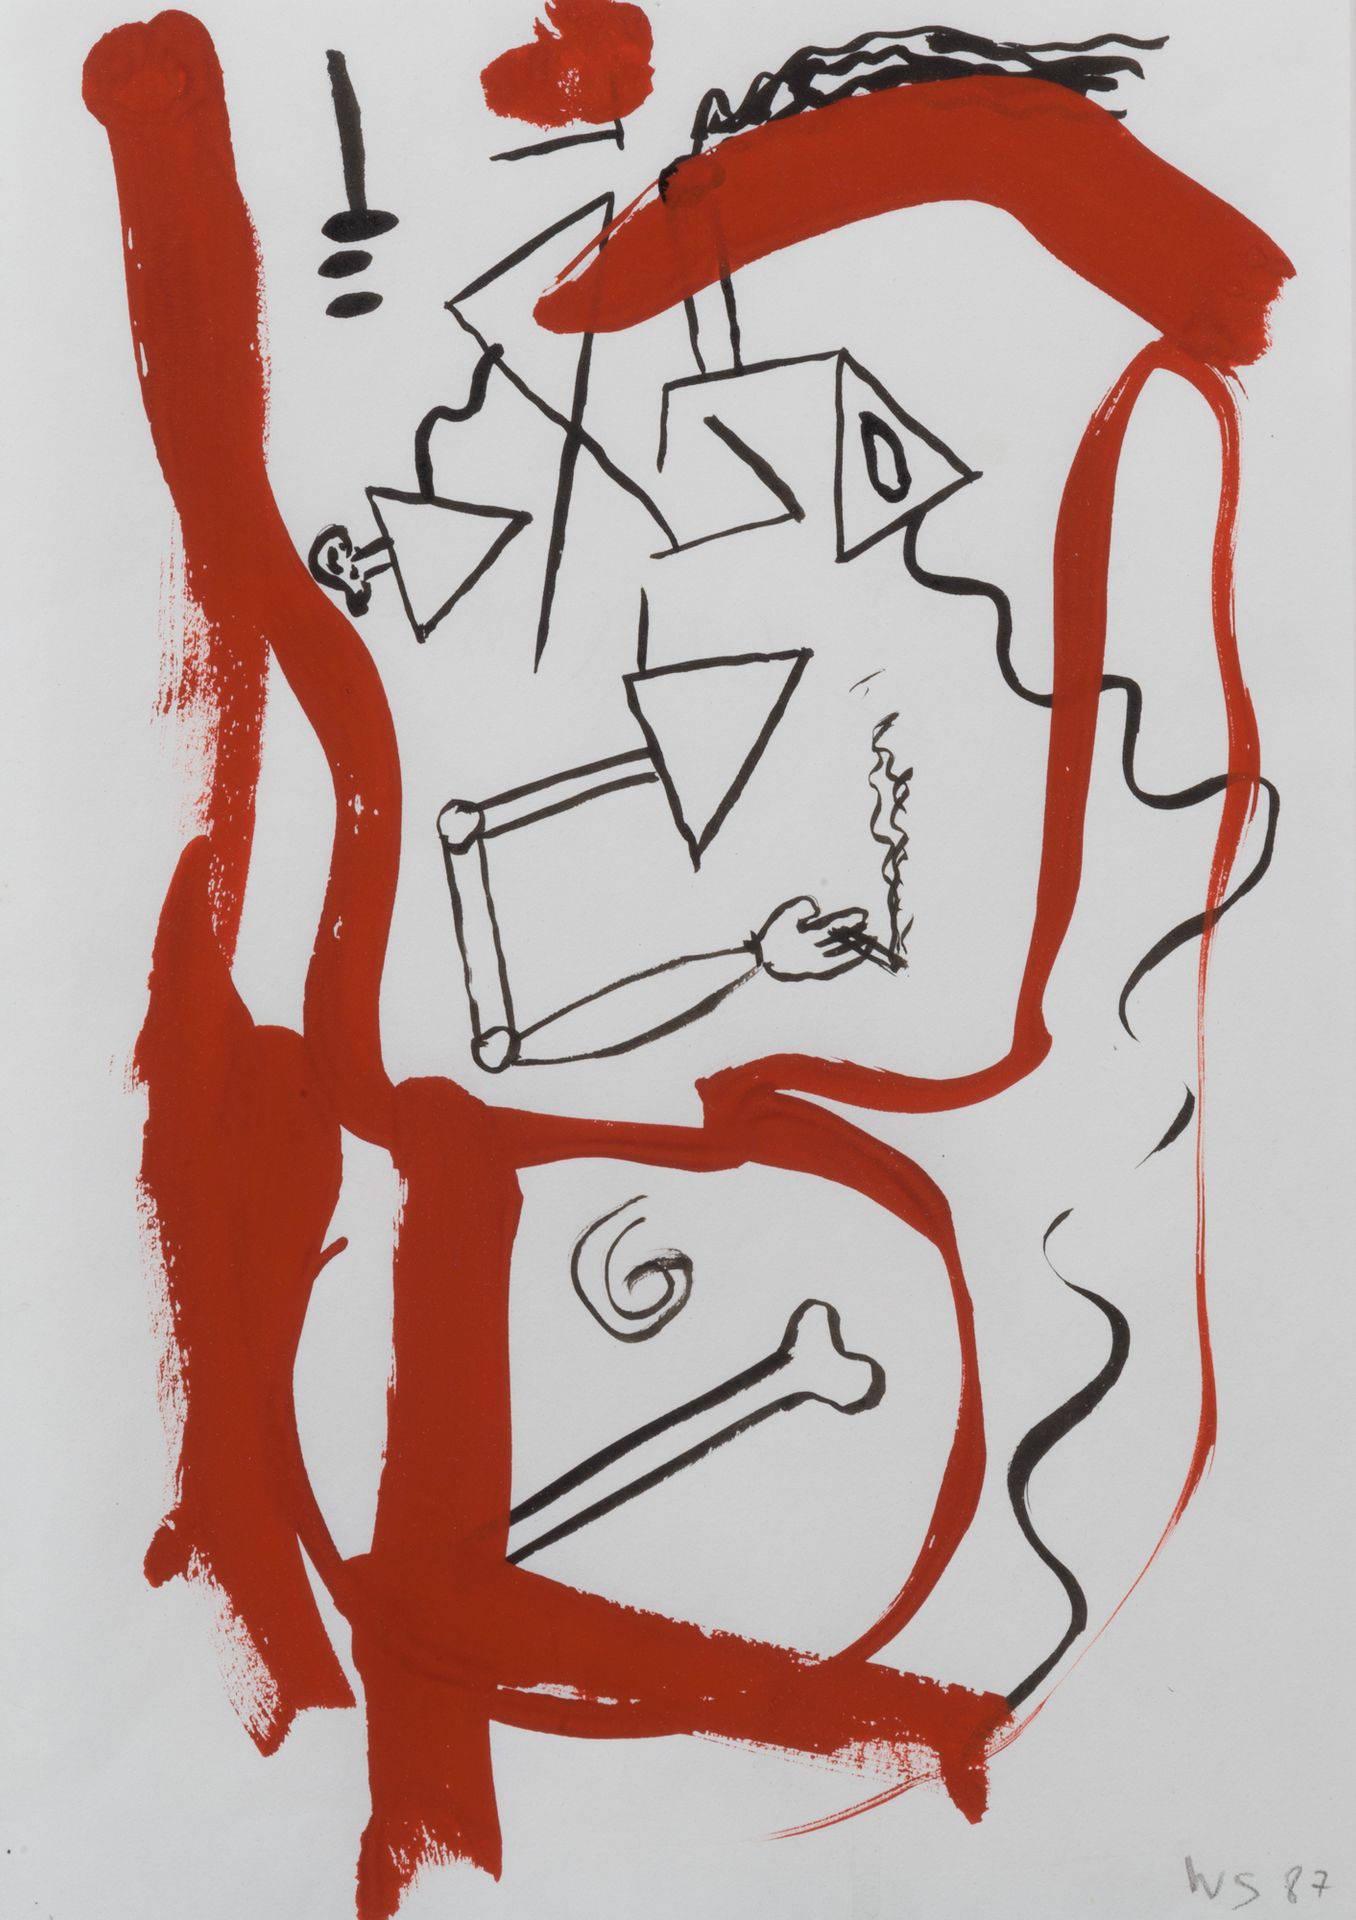 WALTER SWENNEN (NÉ EN 1946) 无题，1987年。
纸上水粉画。
右下方有签名和日期。
水粉画在纸上。
24,5 x 17,5 cm。